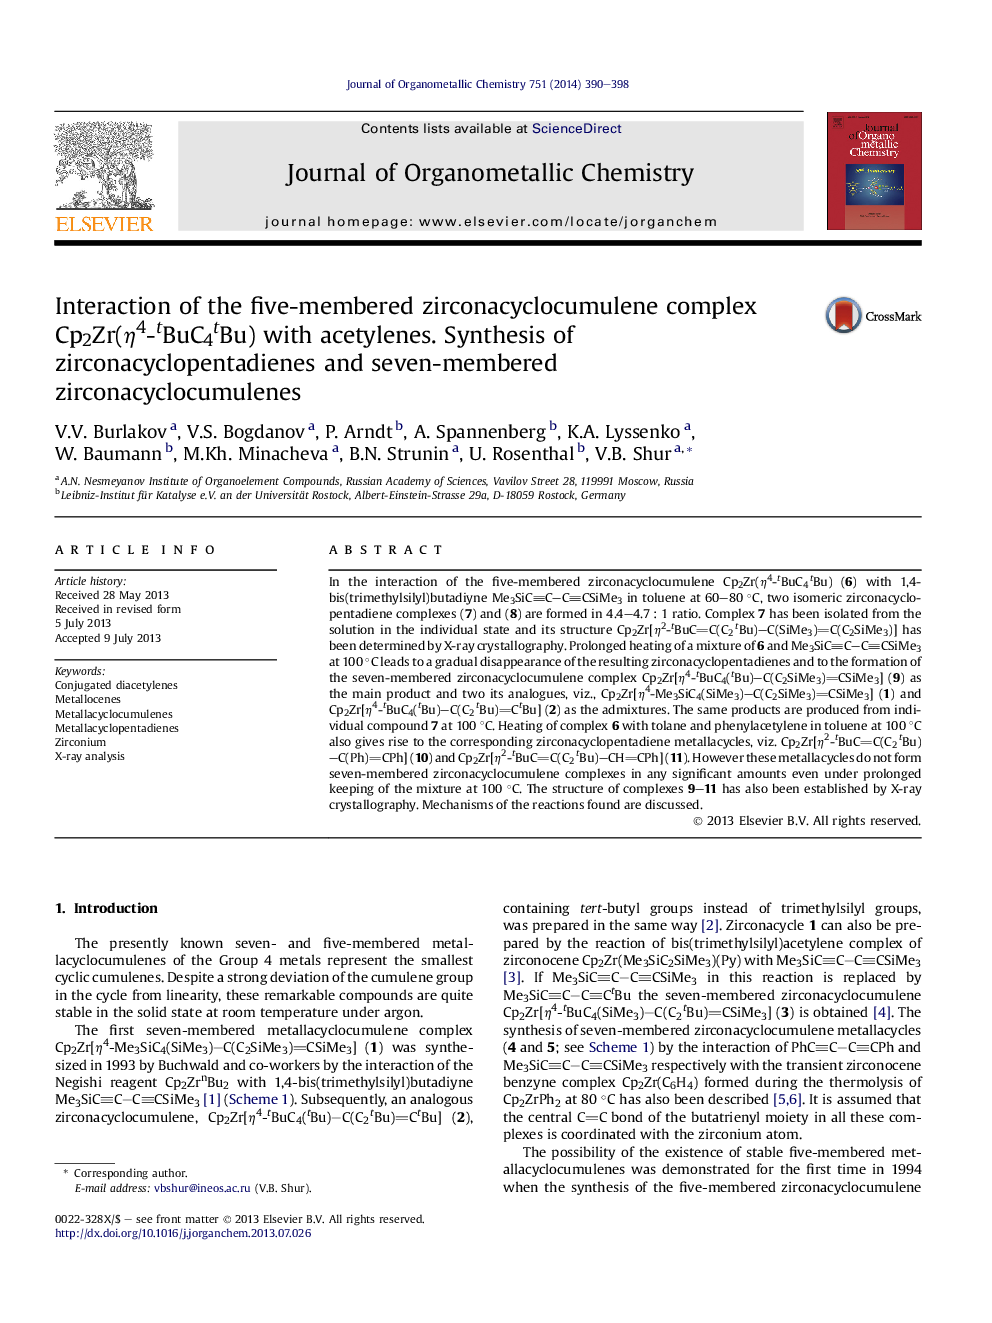 Interaction of the five-membered zirconacyclocumulene complex Cp2Zr(η4-tBuC4tBu) with acetylenes. Synthesis of zirconacyclopentadienes and seven-membered zirconacyclocumulenes